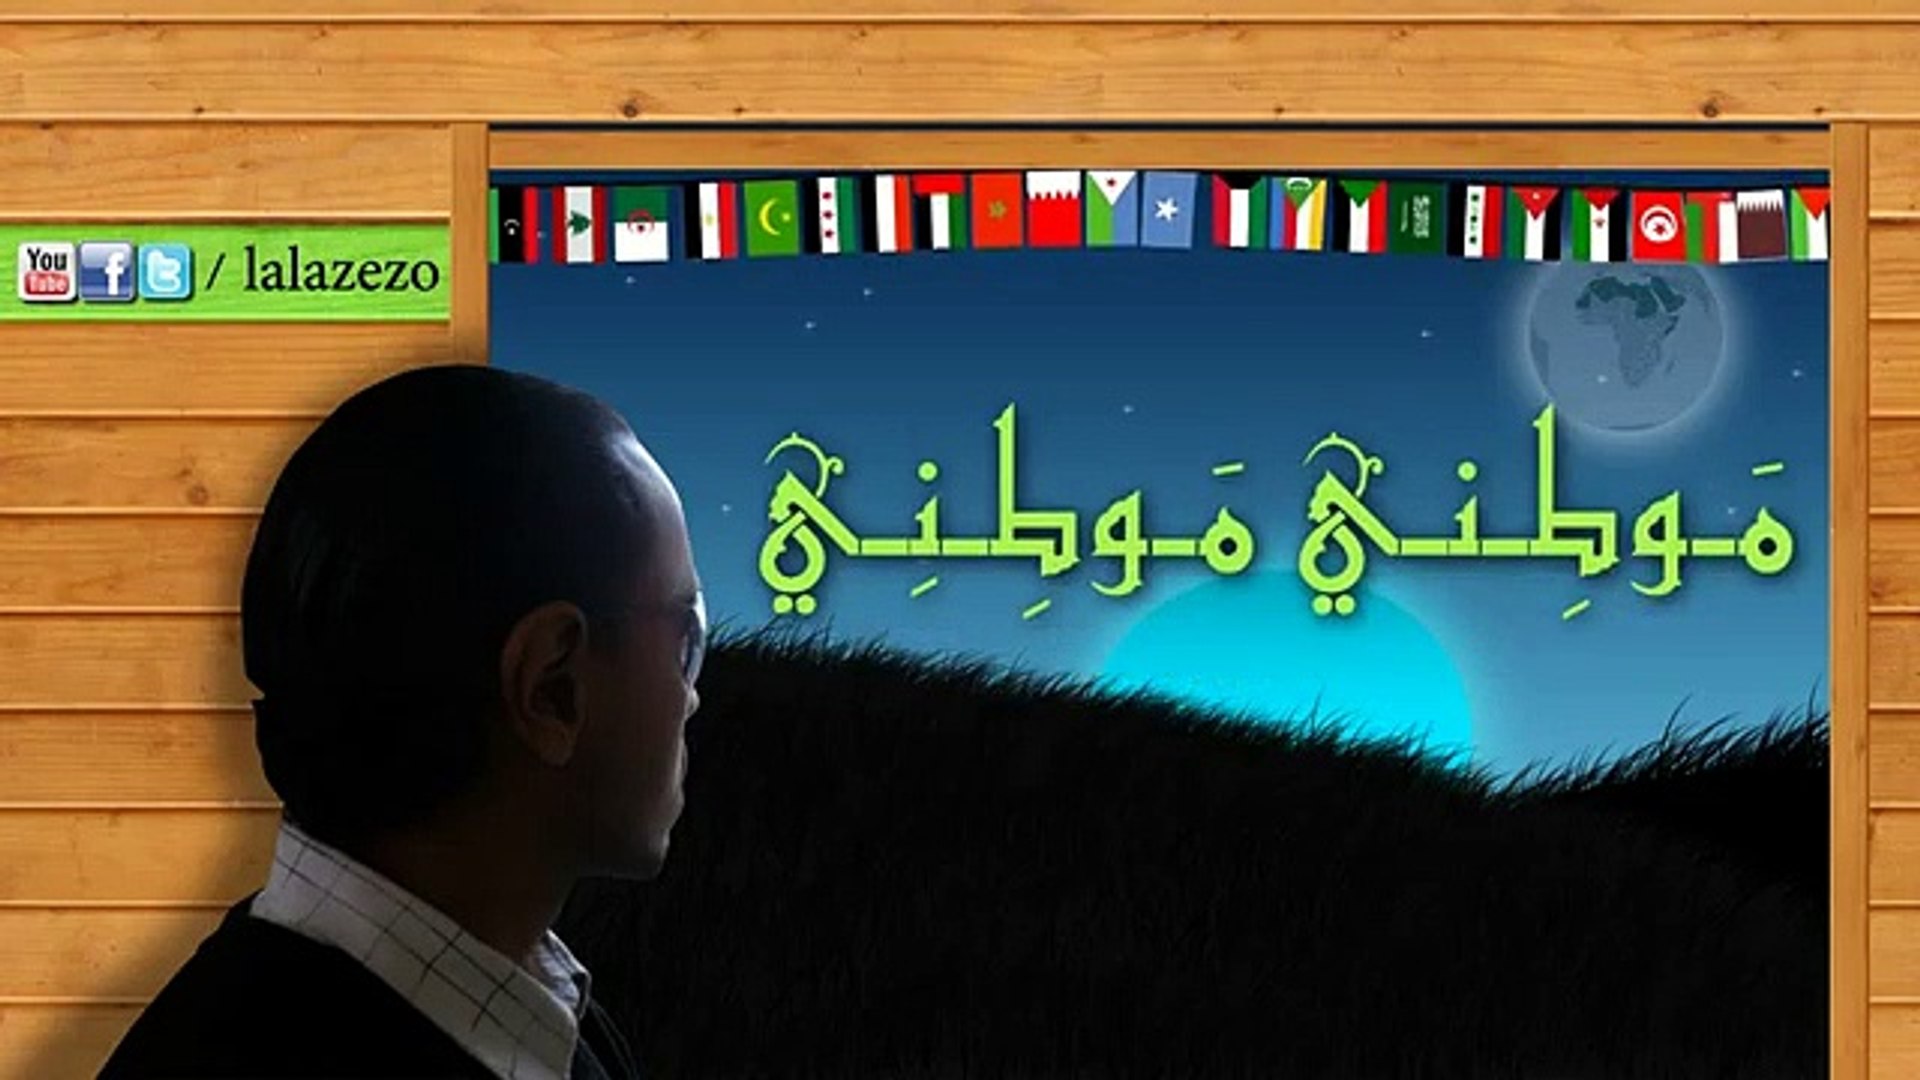 لالا زيزو - موطني - نشيد الأمة العربية - video Dailymotion